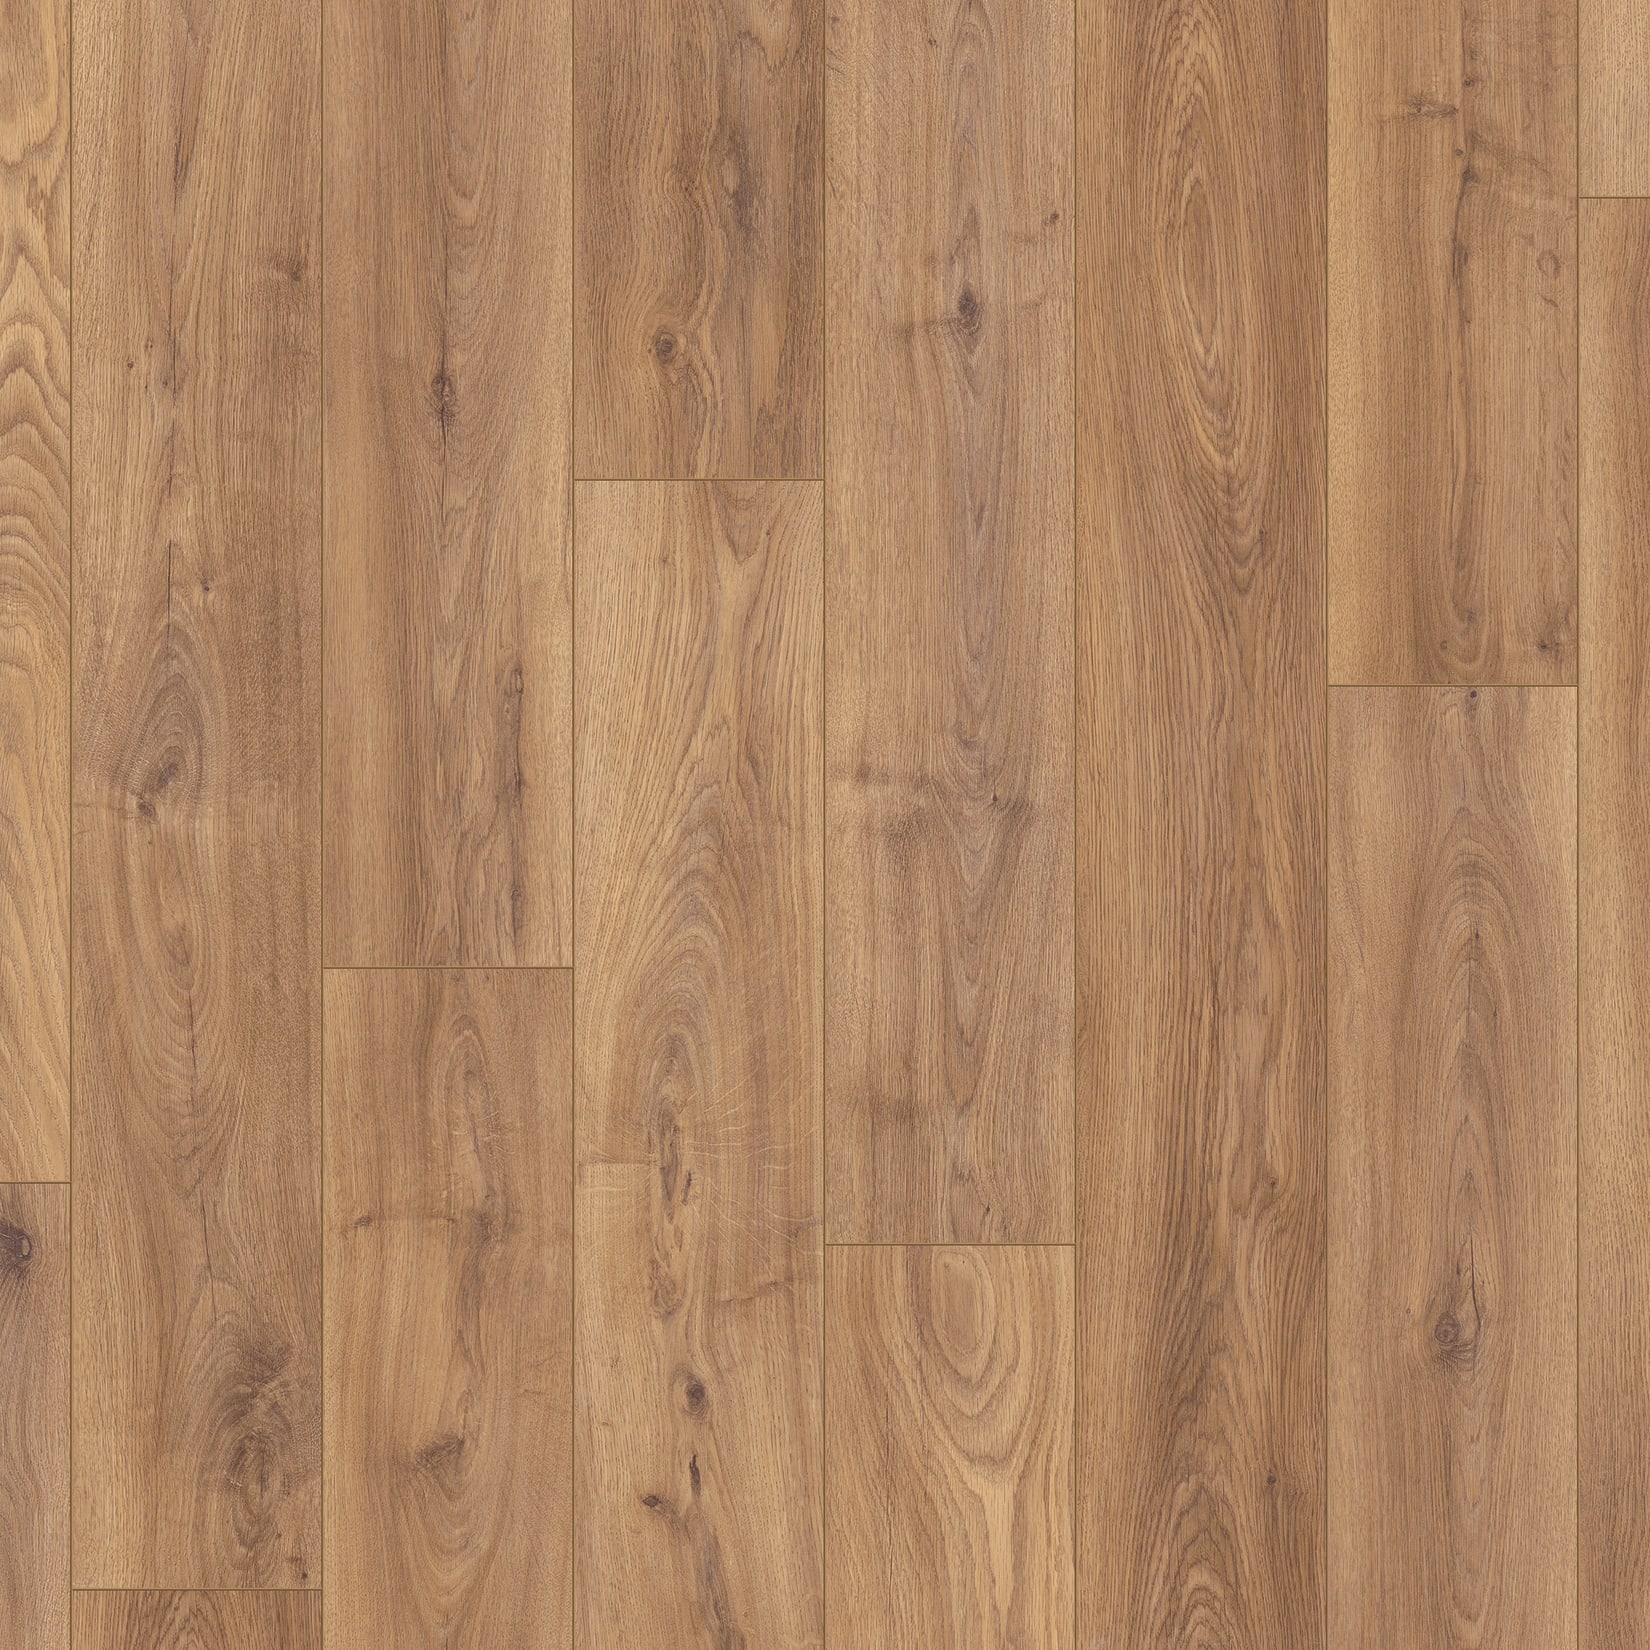 Keswick Medium Oak Laminate Flooring, Deals On Laminate Flooring Uk